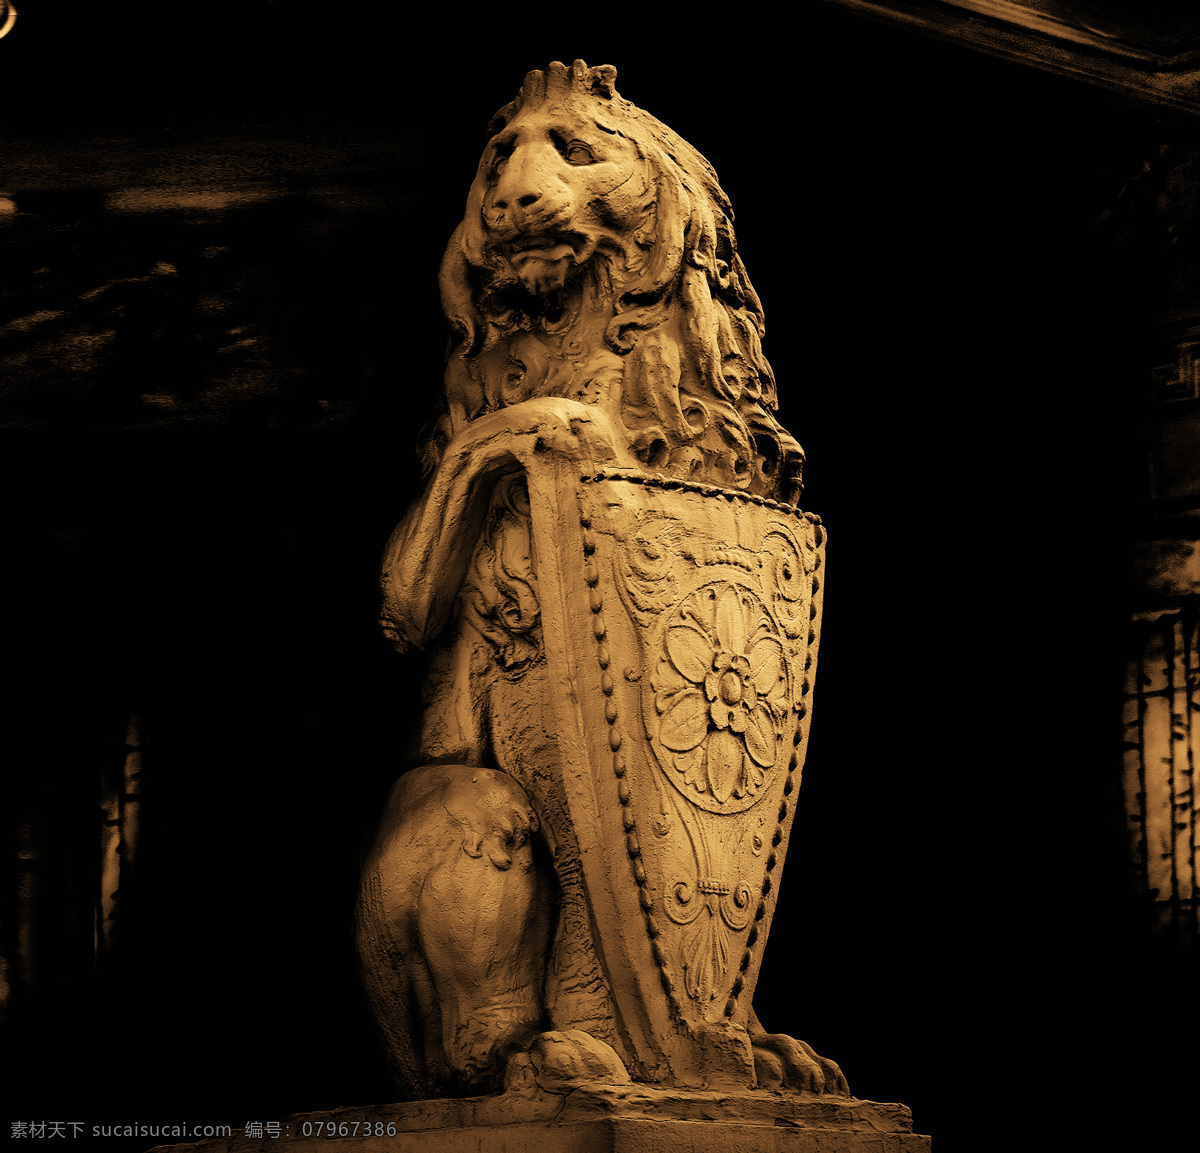 狮子 金色狮子 狮子素材 古铜色狮子 广告素材 吉祥 古代 传统 金色 雕刻 威武 石雕 文化 凶猛的狮子 元素 艺术 民族 图腾 石狮子 狮子雕塑 雕塑 狮子模型 高清图片 文化艺术 传统文化